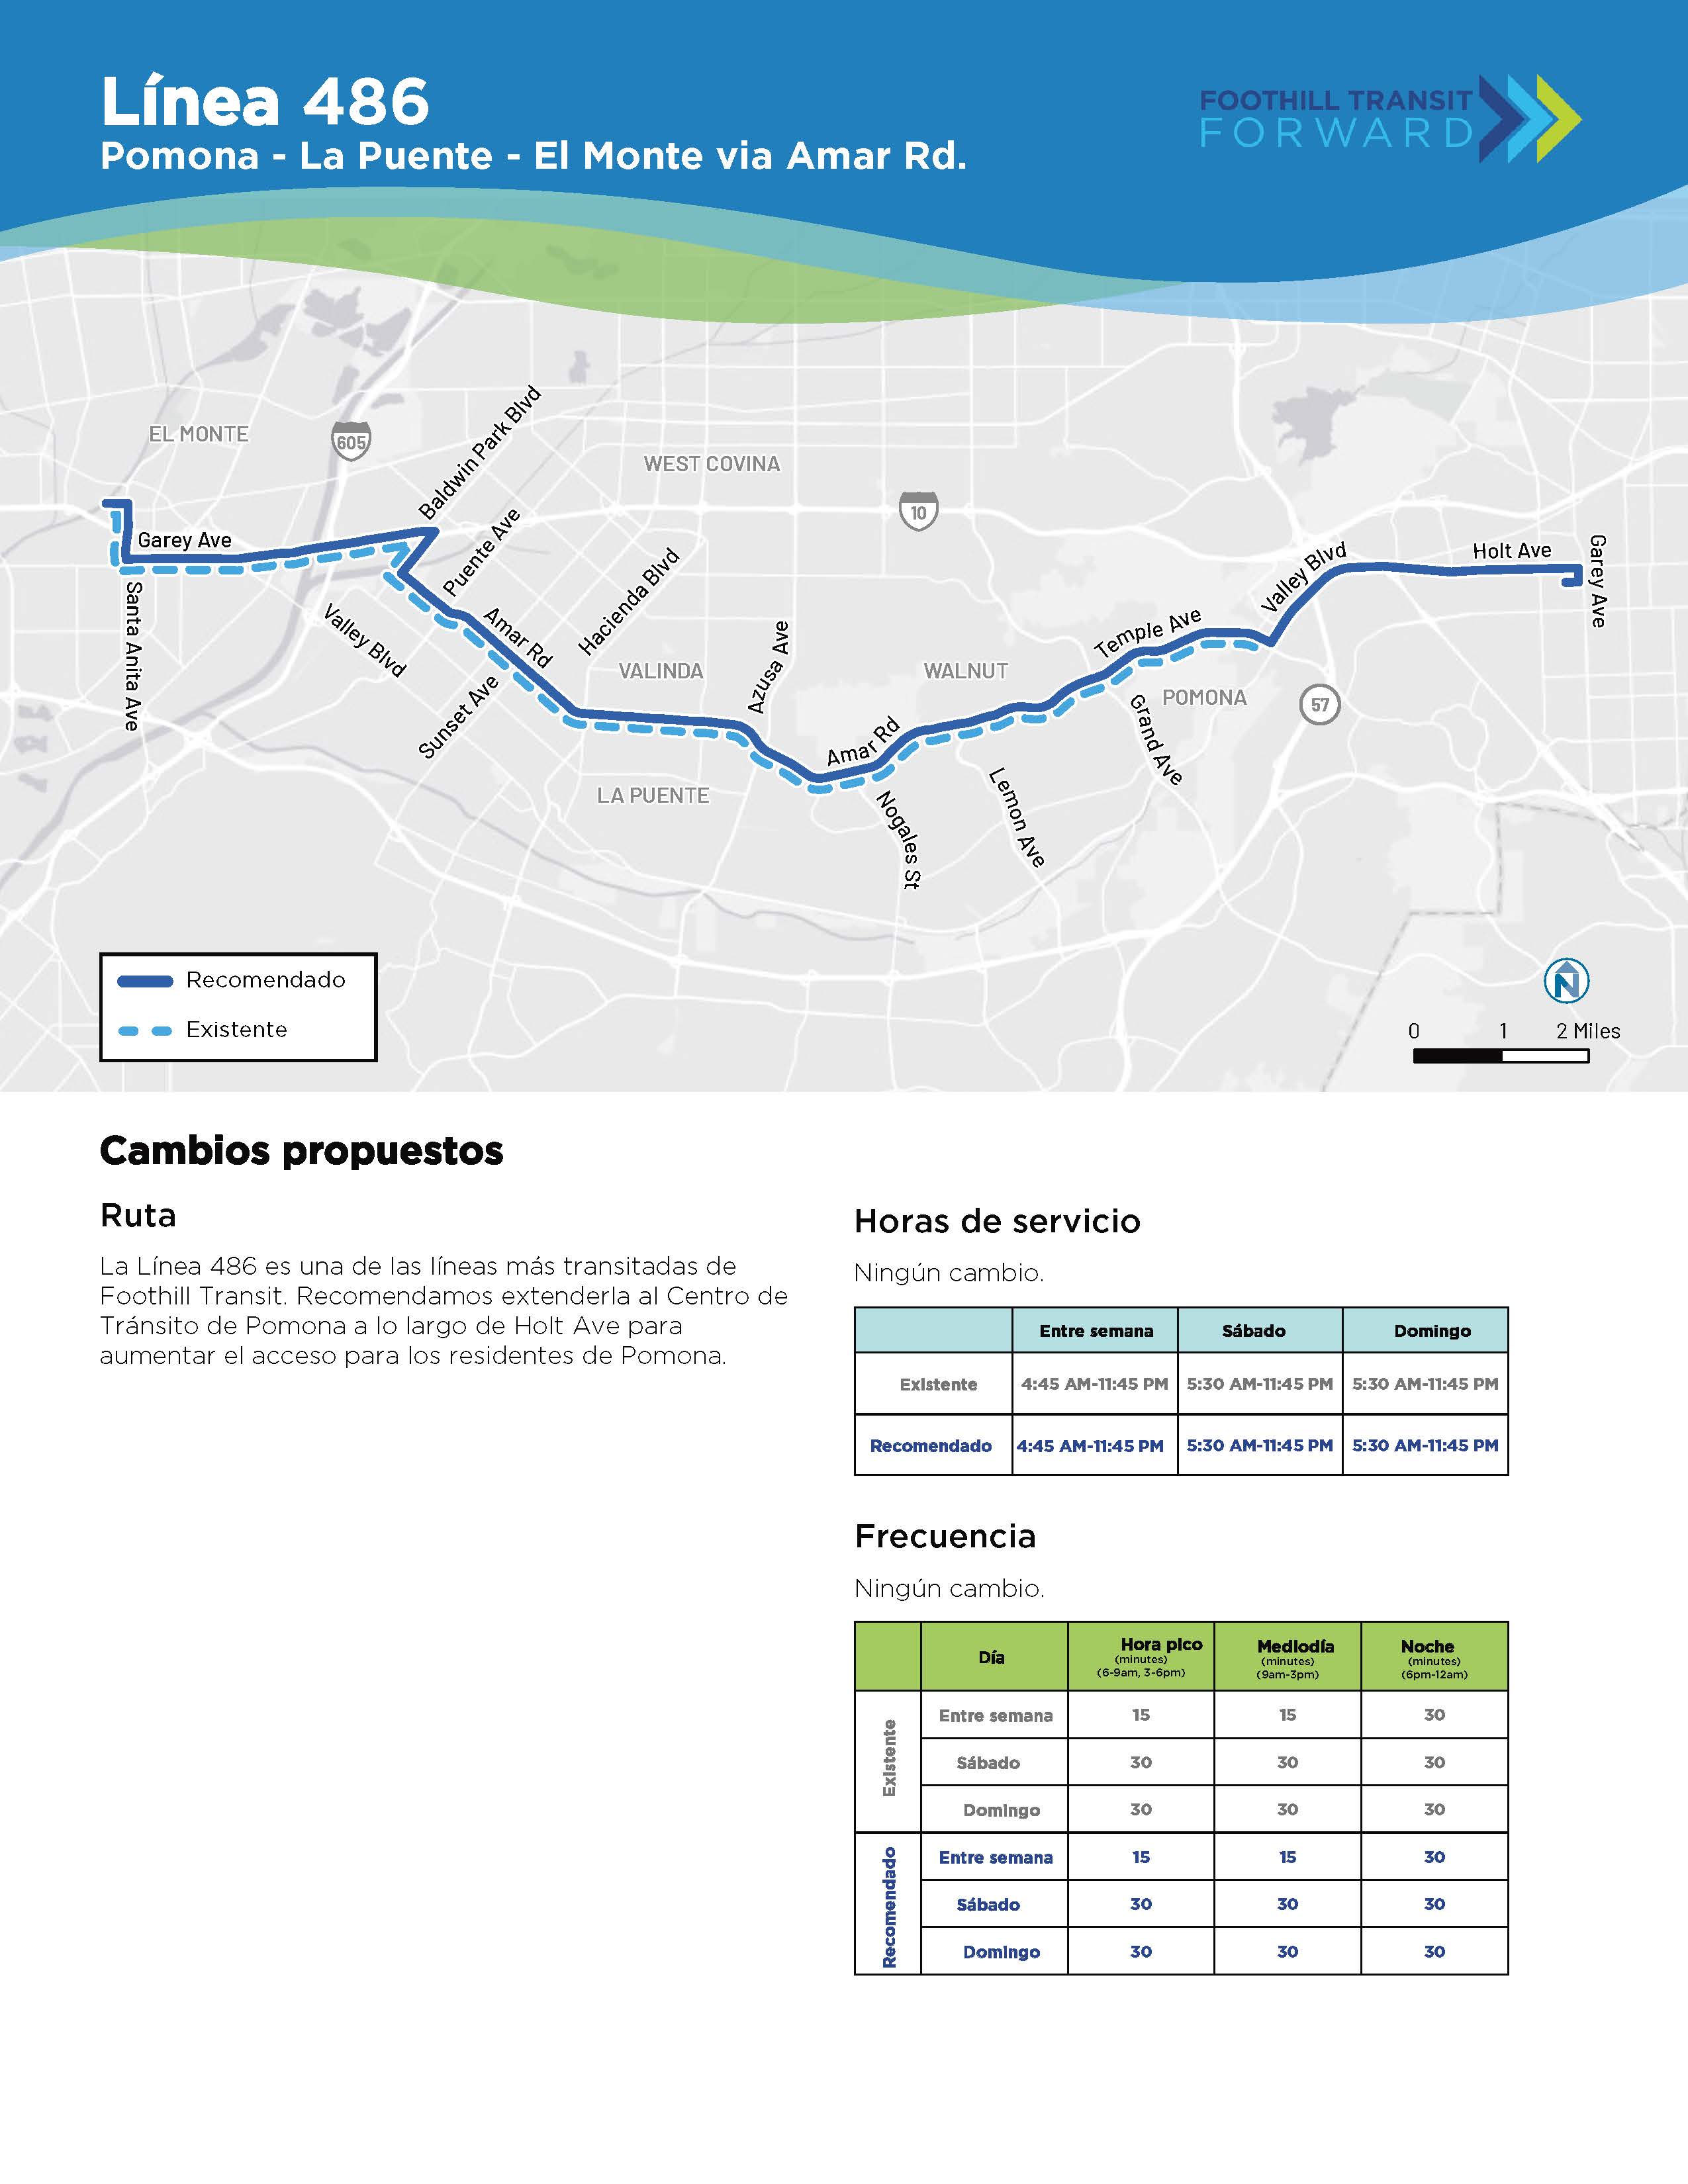 La Línea 486 es una de las líneas más transitadas de Foothill Transit. Recomendamos extenderla al Centro de Tránsito de Pomona a lo largo de Holt Ave para aumentar el acceso para los residentes de Pomona.